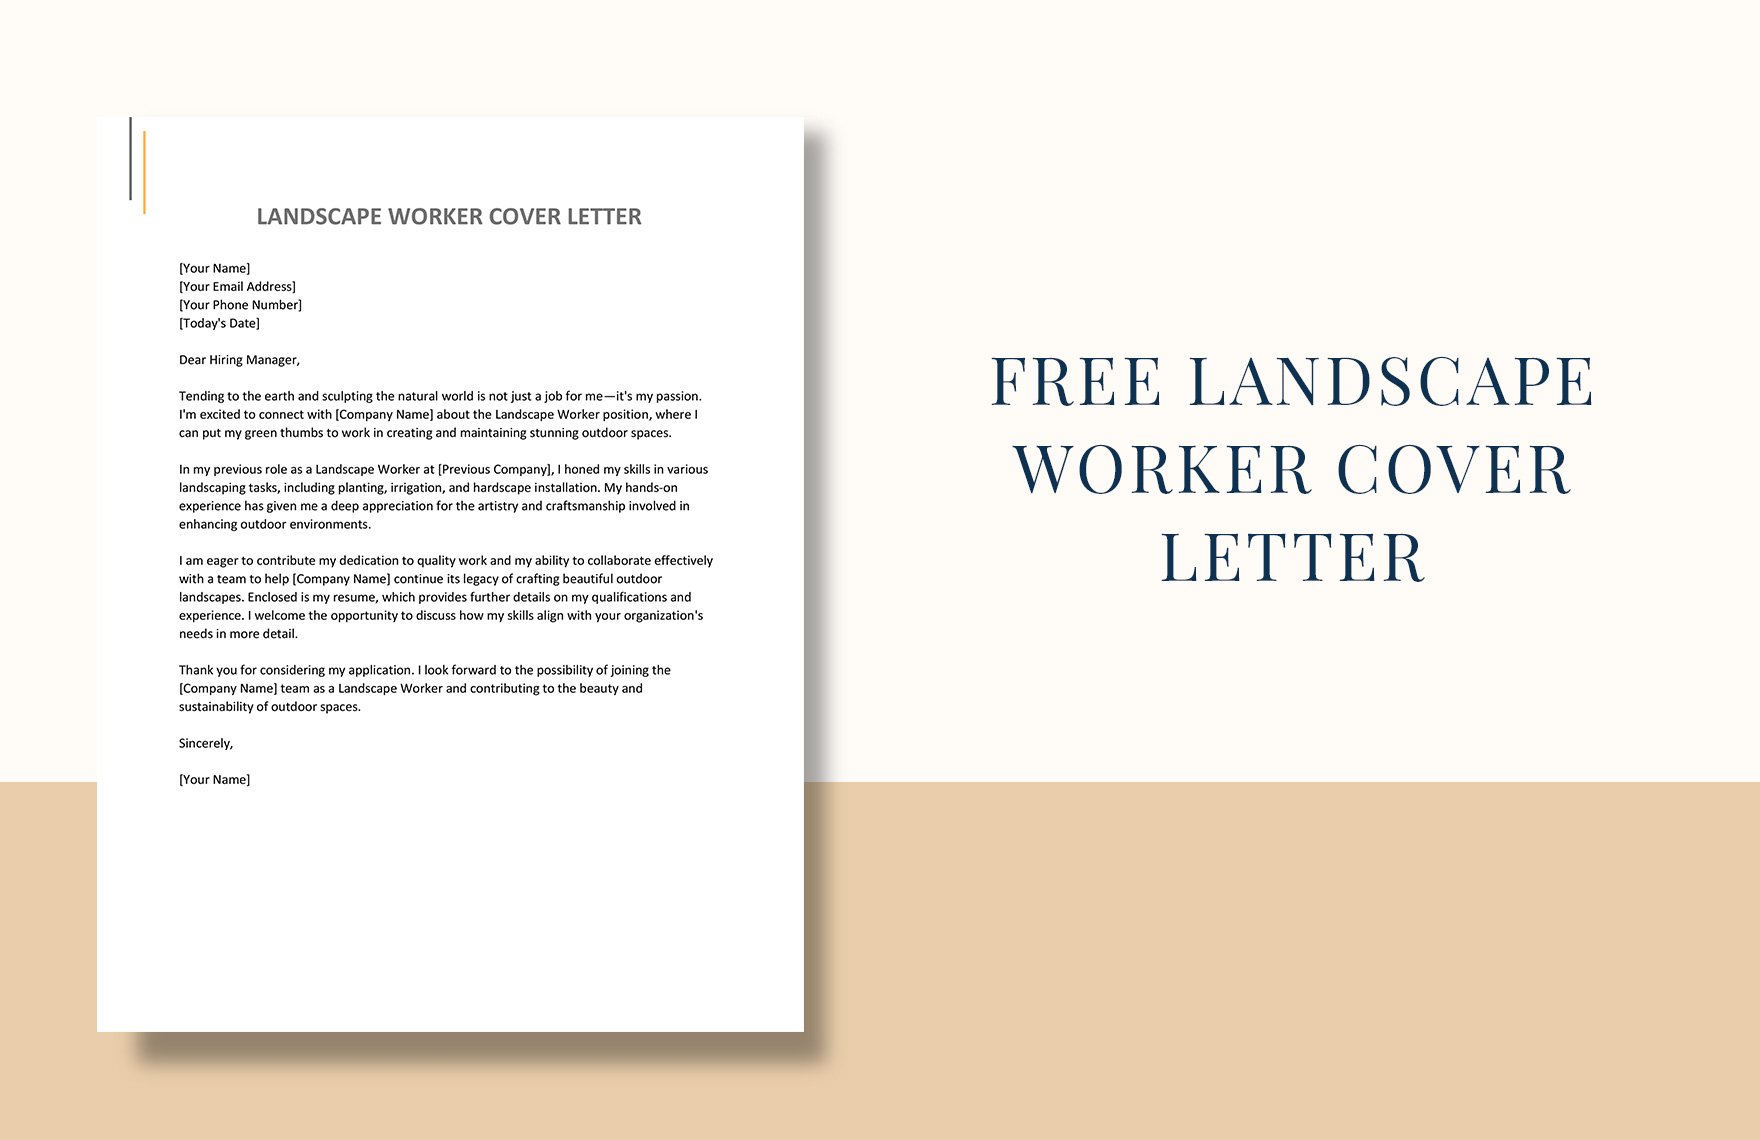 Landscape Worker Cover Letter in Word, Google Docs